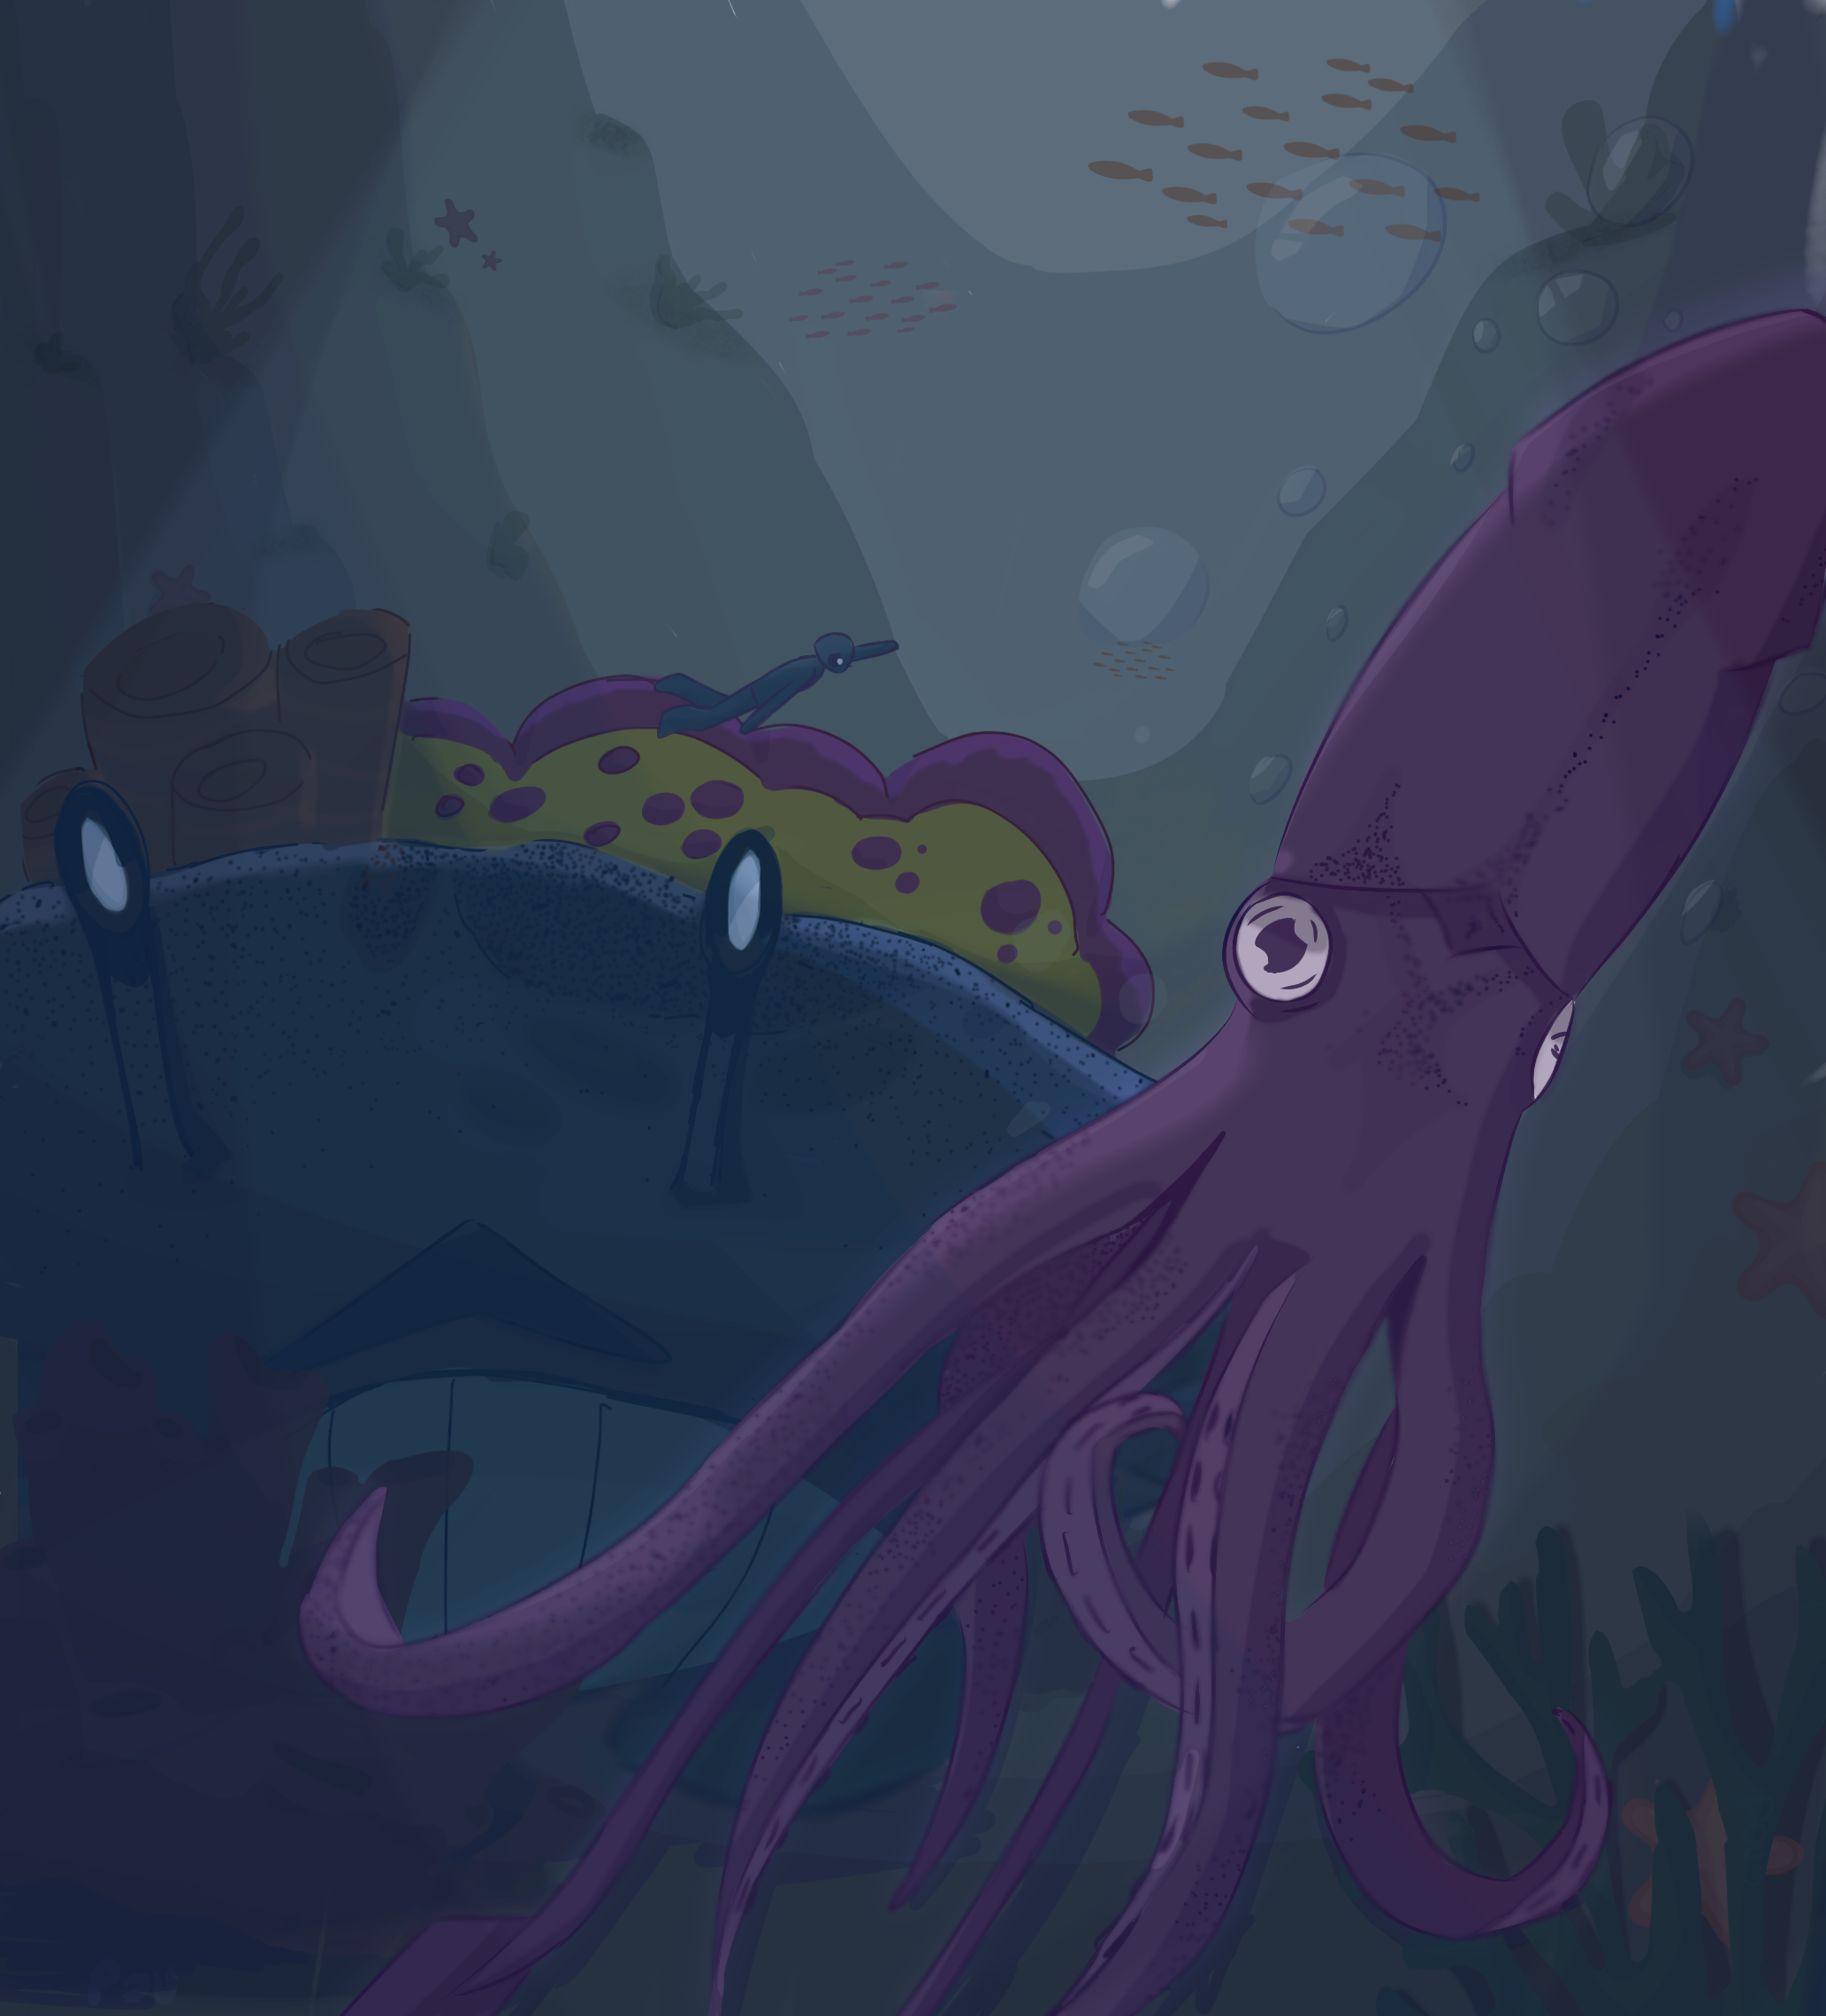 A squid and a crab in a dark ocean